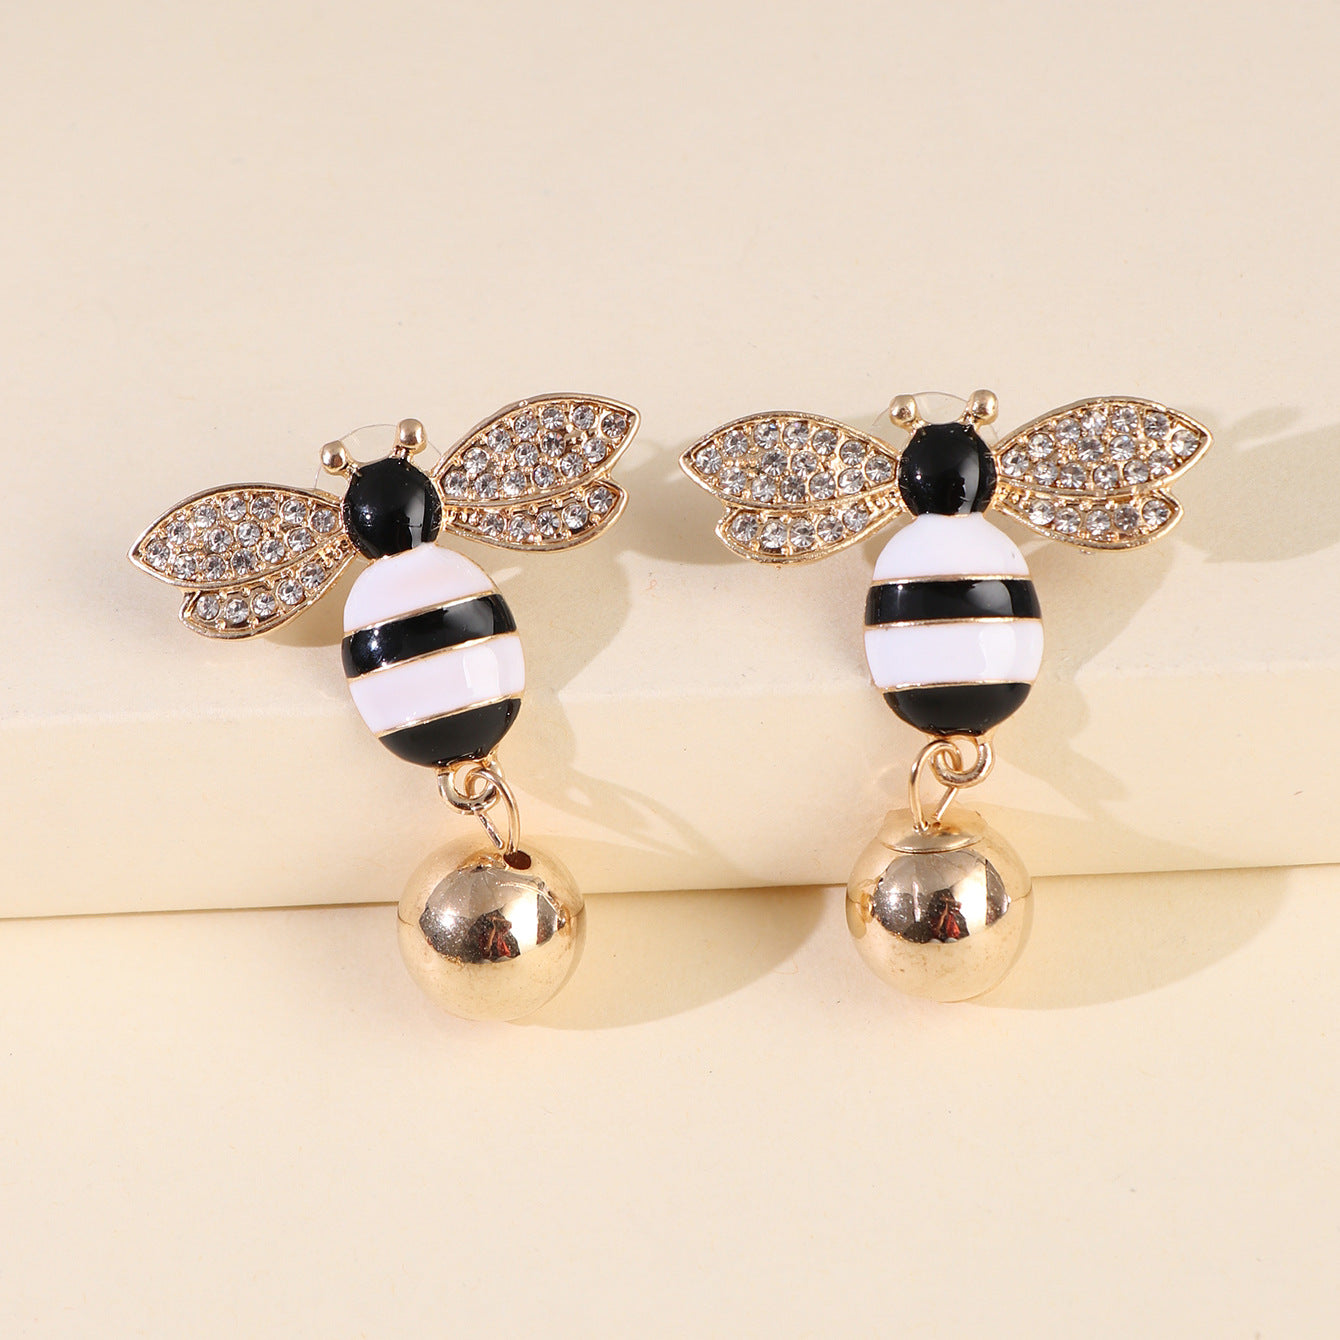 Hot Sales New Symmetrical Earrings Bee Pearl Earrings Ear Jewelry Insect Earrings Korea Wholesale Gooddiy